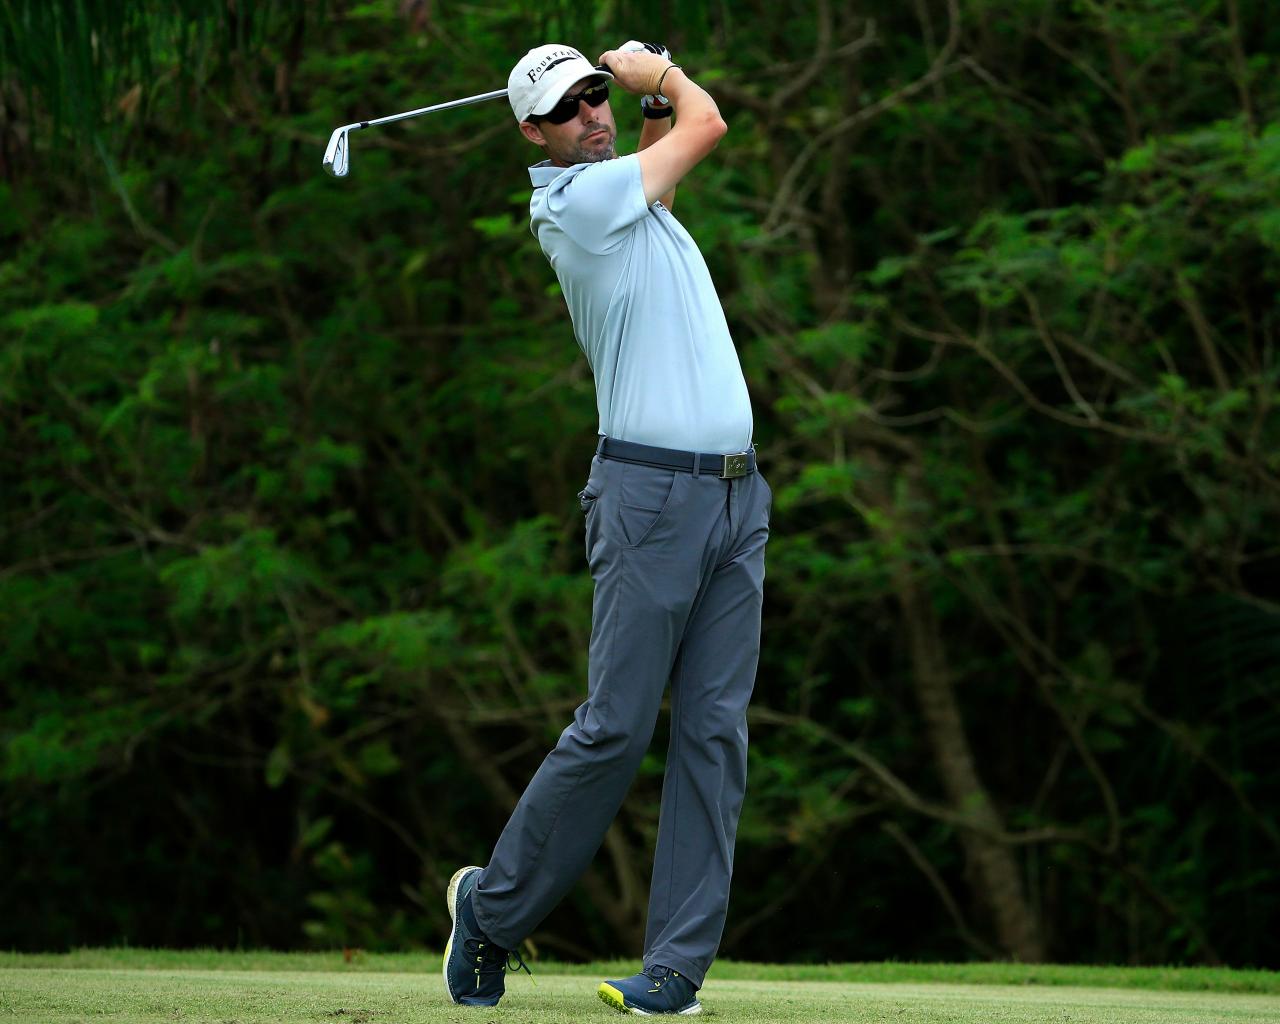 Câu chuyện golfer McLuen may mắn thoát chết 2 lần tiếp tục chinh phục PGA Tour